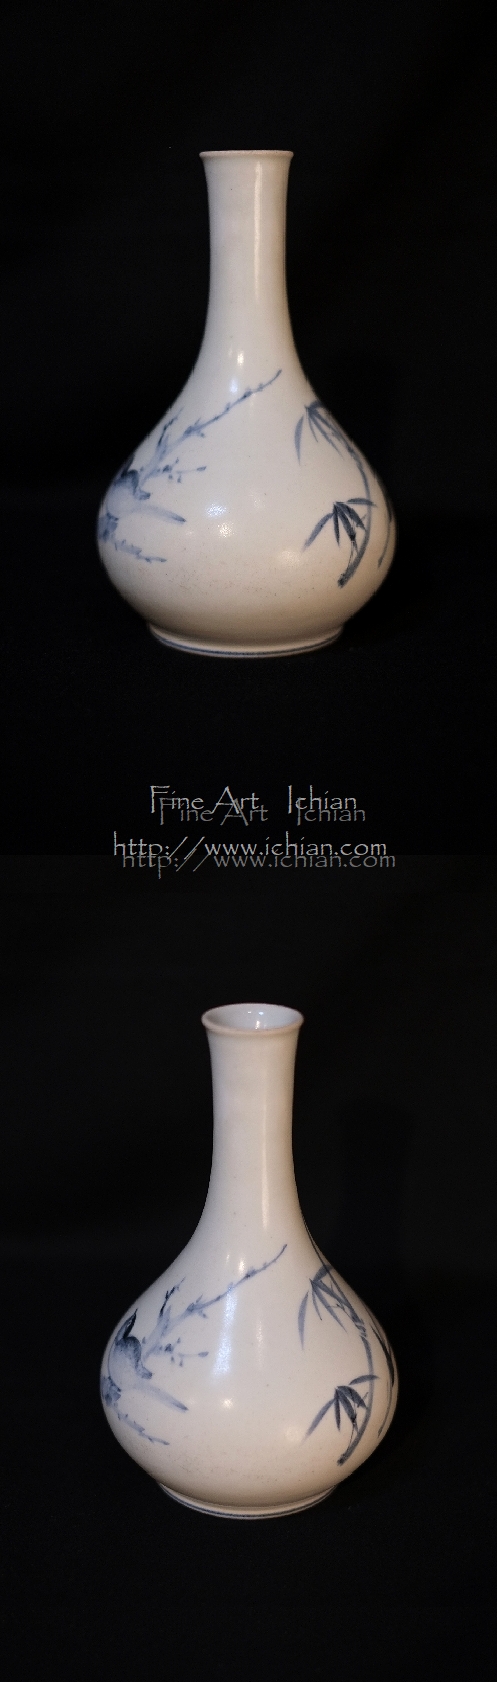 白磁染付双鳥竹文瓶李朝後期 分院 18世紀~19世紀 :: ichian